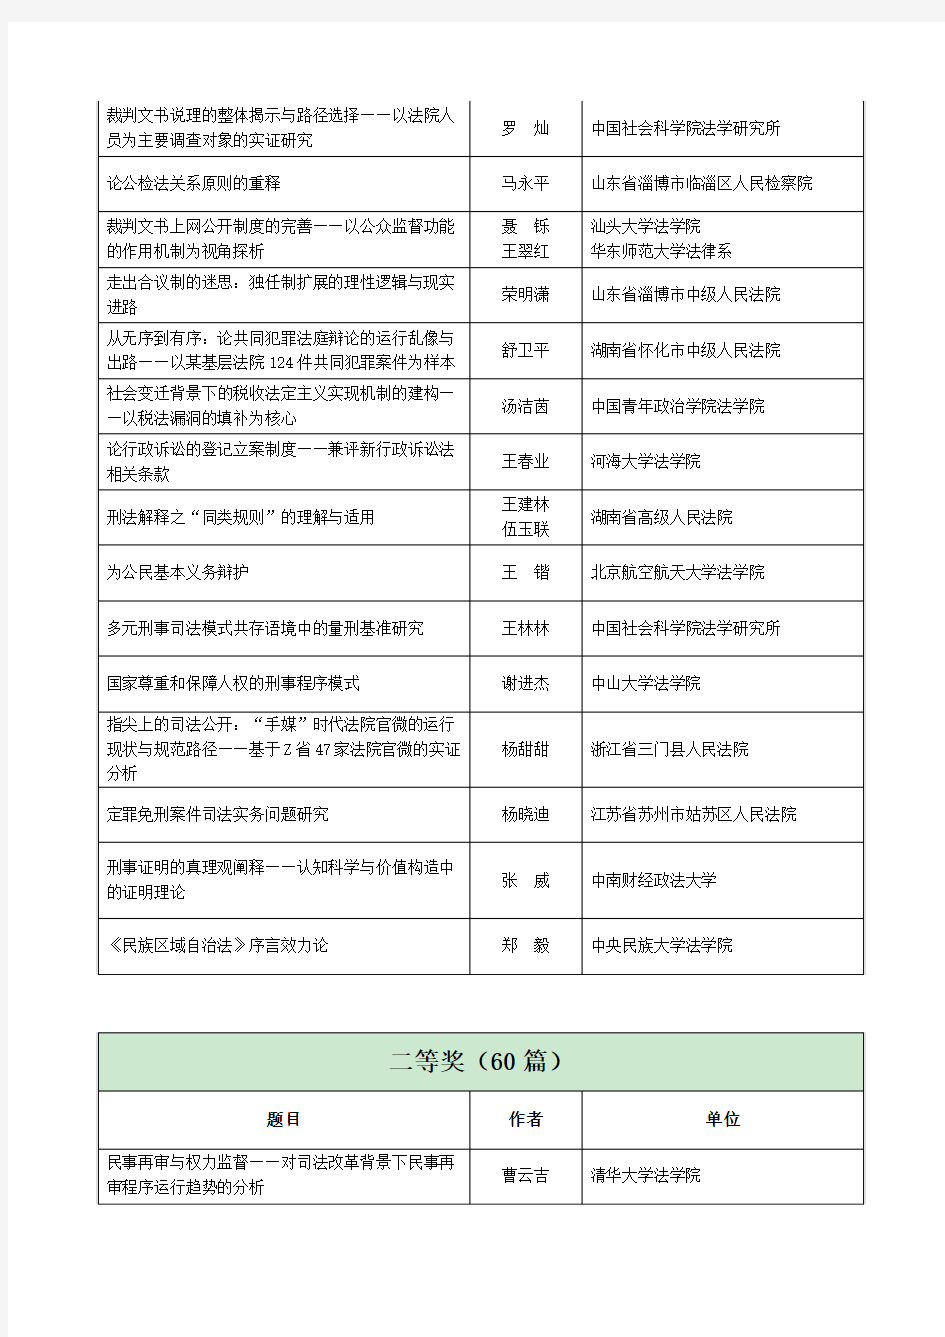 第十届中国法学青年论坛主题征文拟获奖论文名单